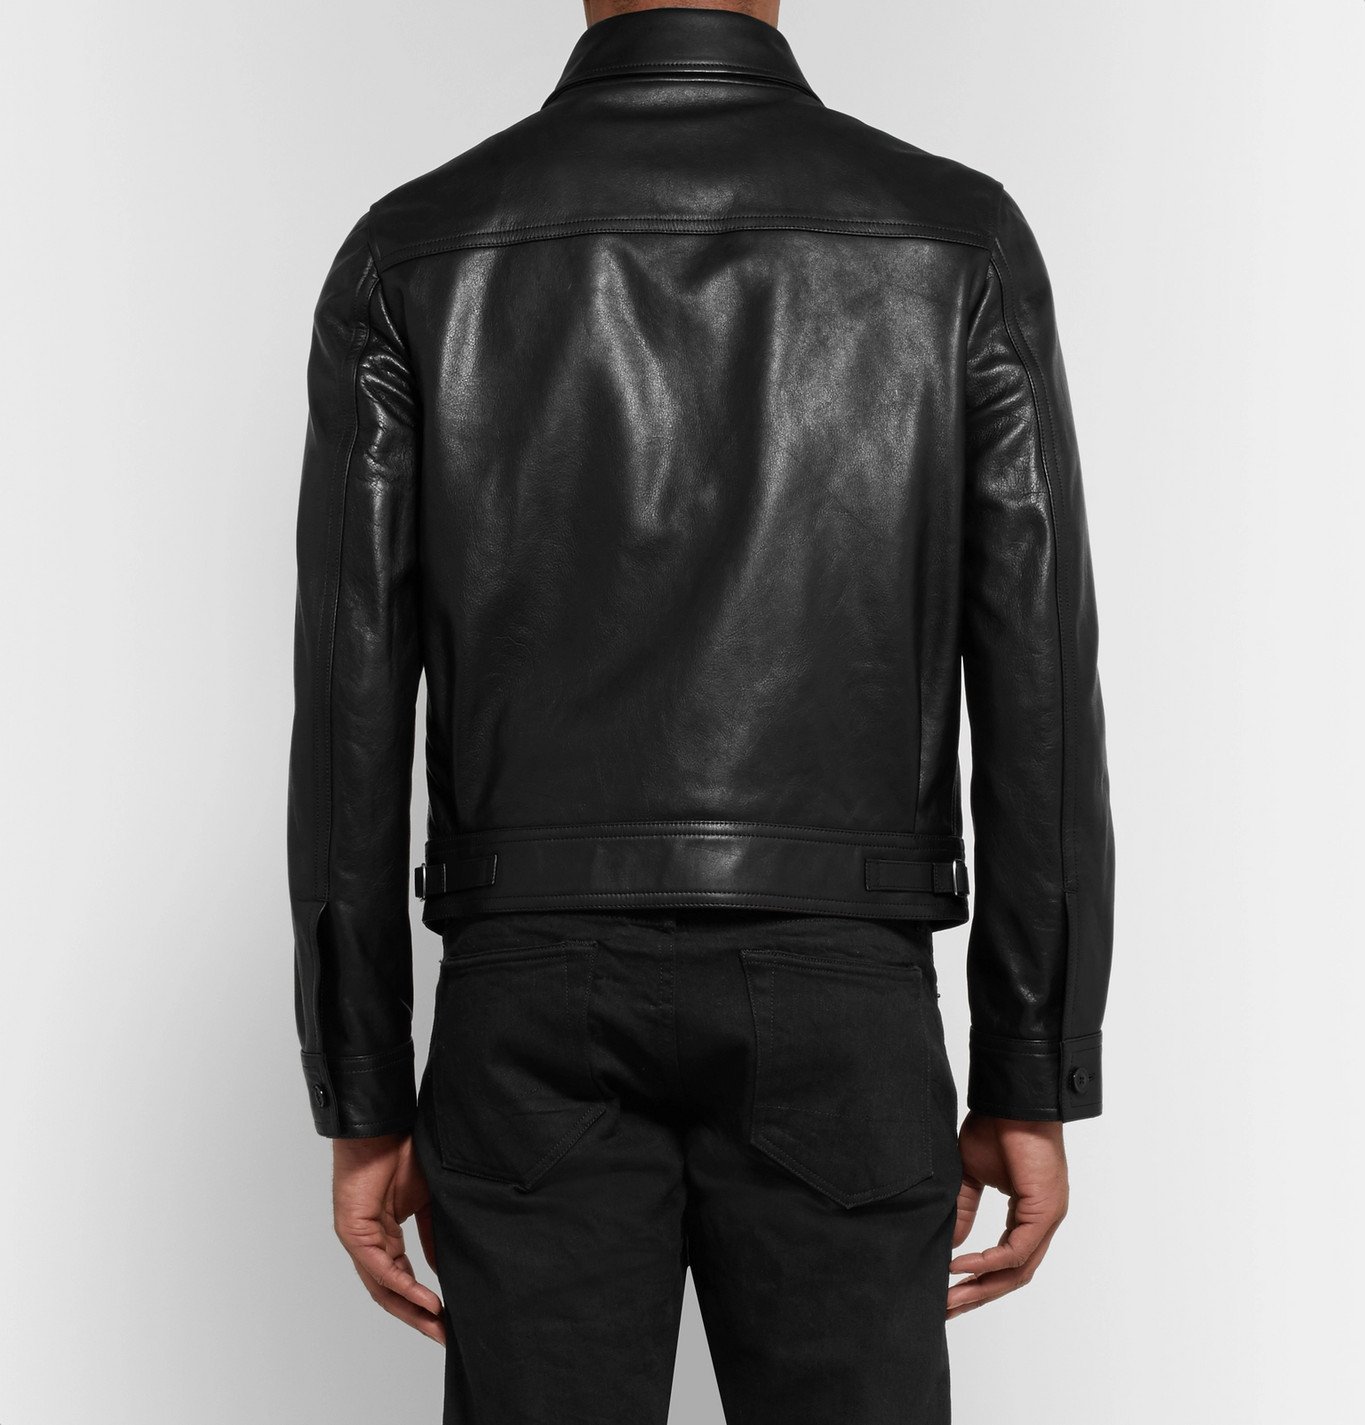 TOM FORD - Leather Jacket - Black TOM FORD